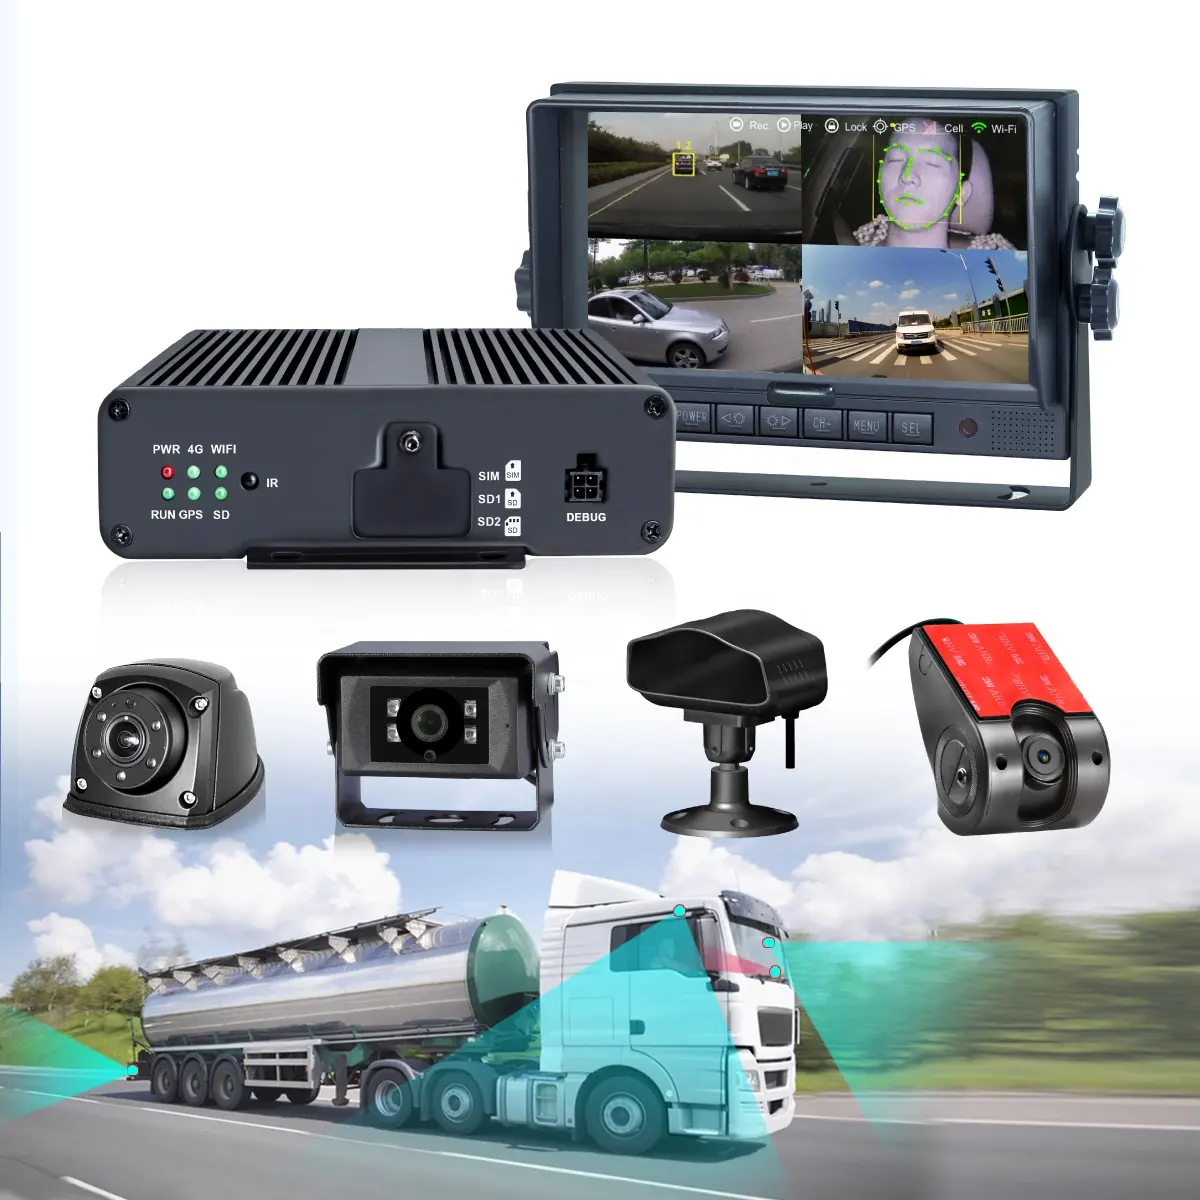 مجموعة ستاركان للتسجيل فيديو رقمي للشاحنات والحافلات 4g 3g gps تدعم واي فاي وظيفة عد الأشخاص ADAS/AVM/DSM